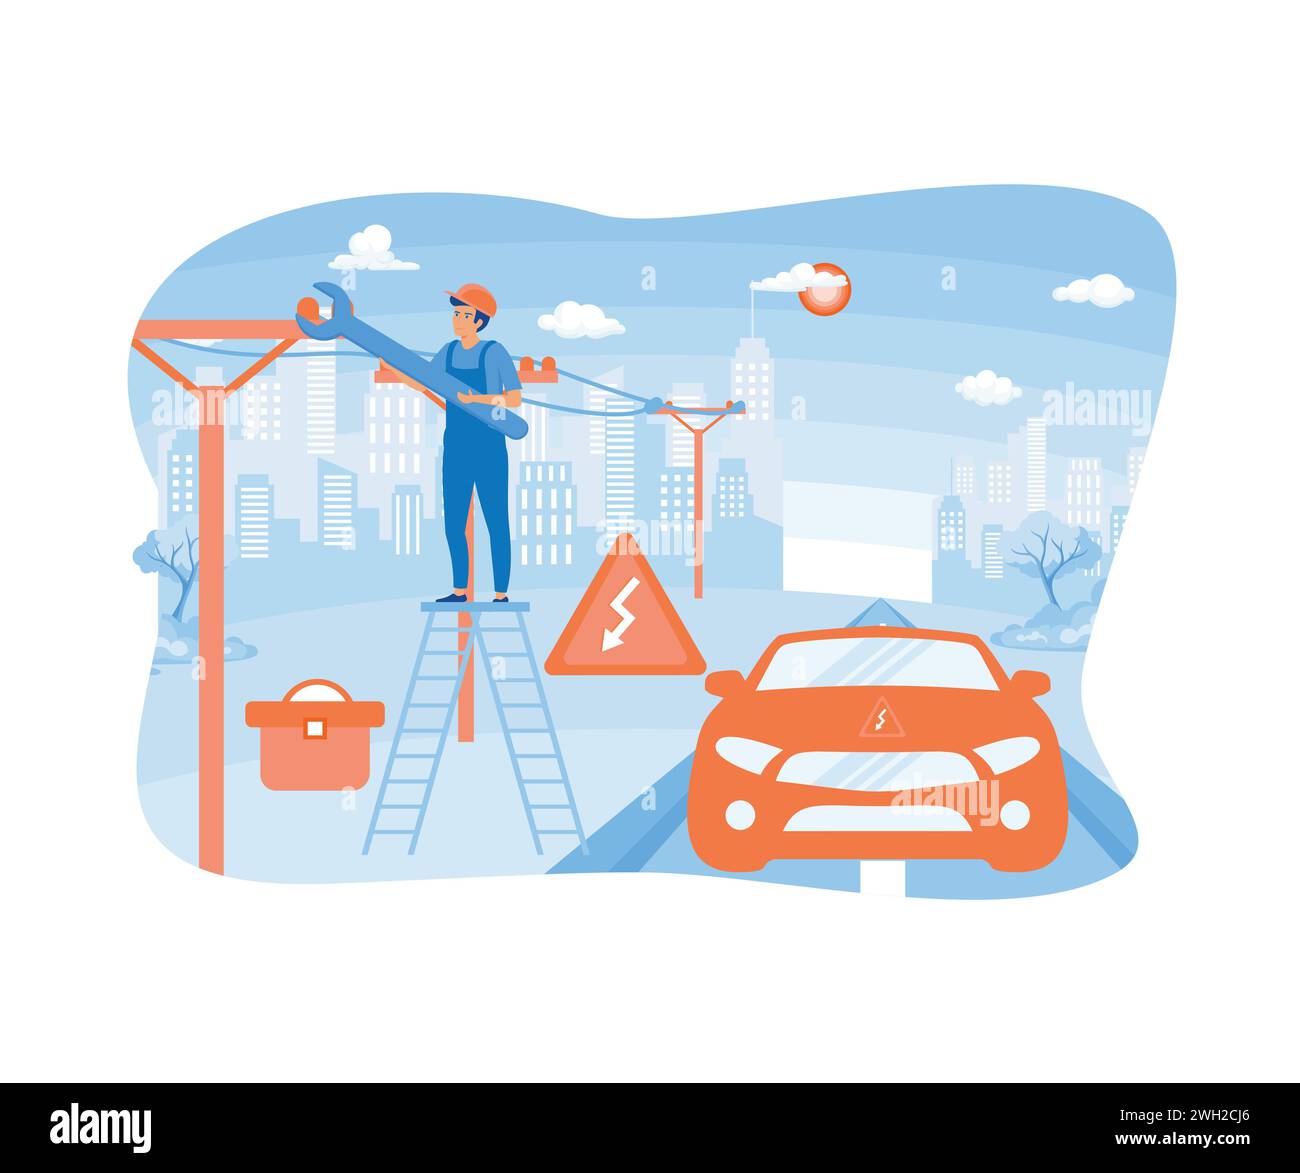 Homme debout sur les marches près de la voiture réparant l'électricité. illustration moderne vectorielle plate Illustration de Vecteur